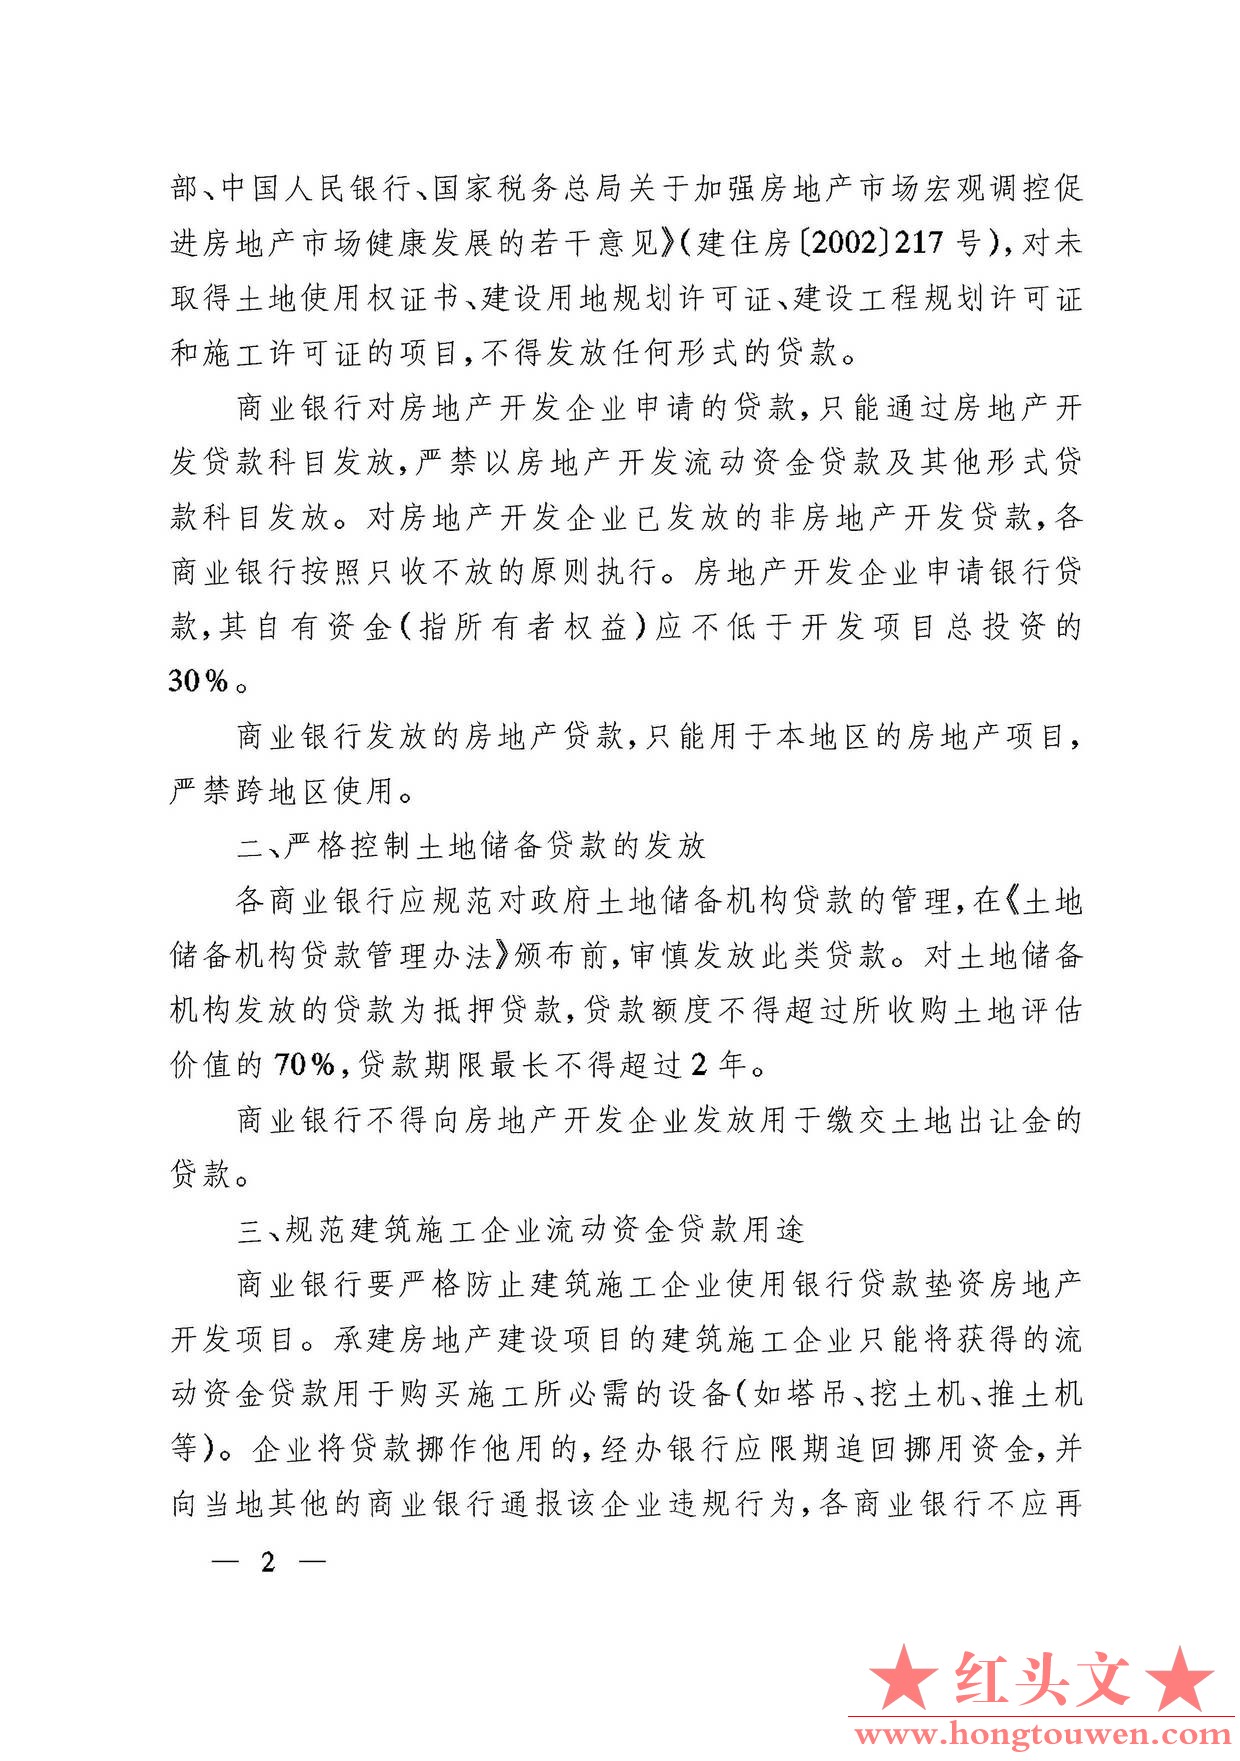 银发[2003]121号-中国人民银行关于进一步加强房地产信贷业务管理的通知_页面_2.jpg.jpg